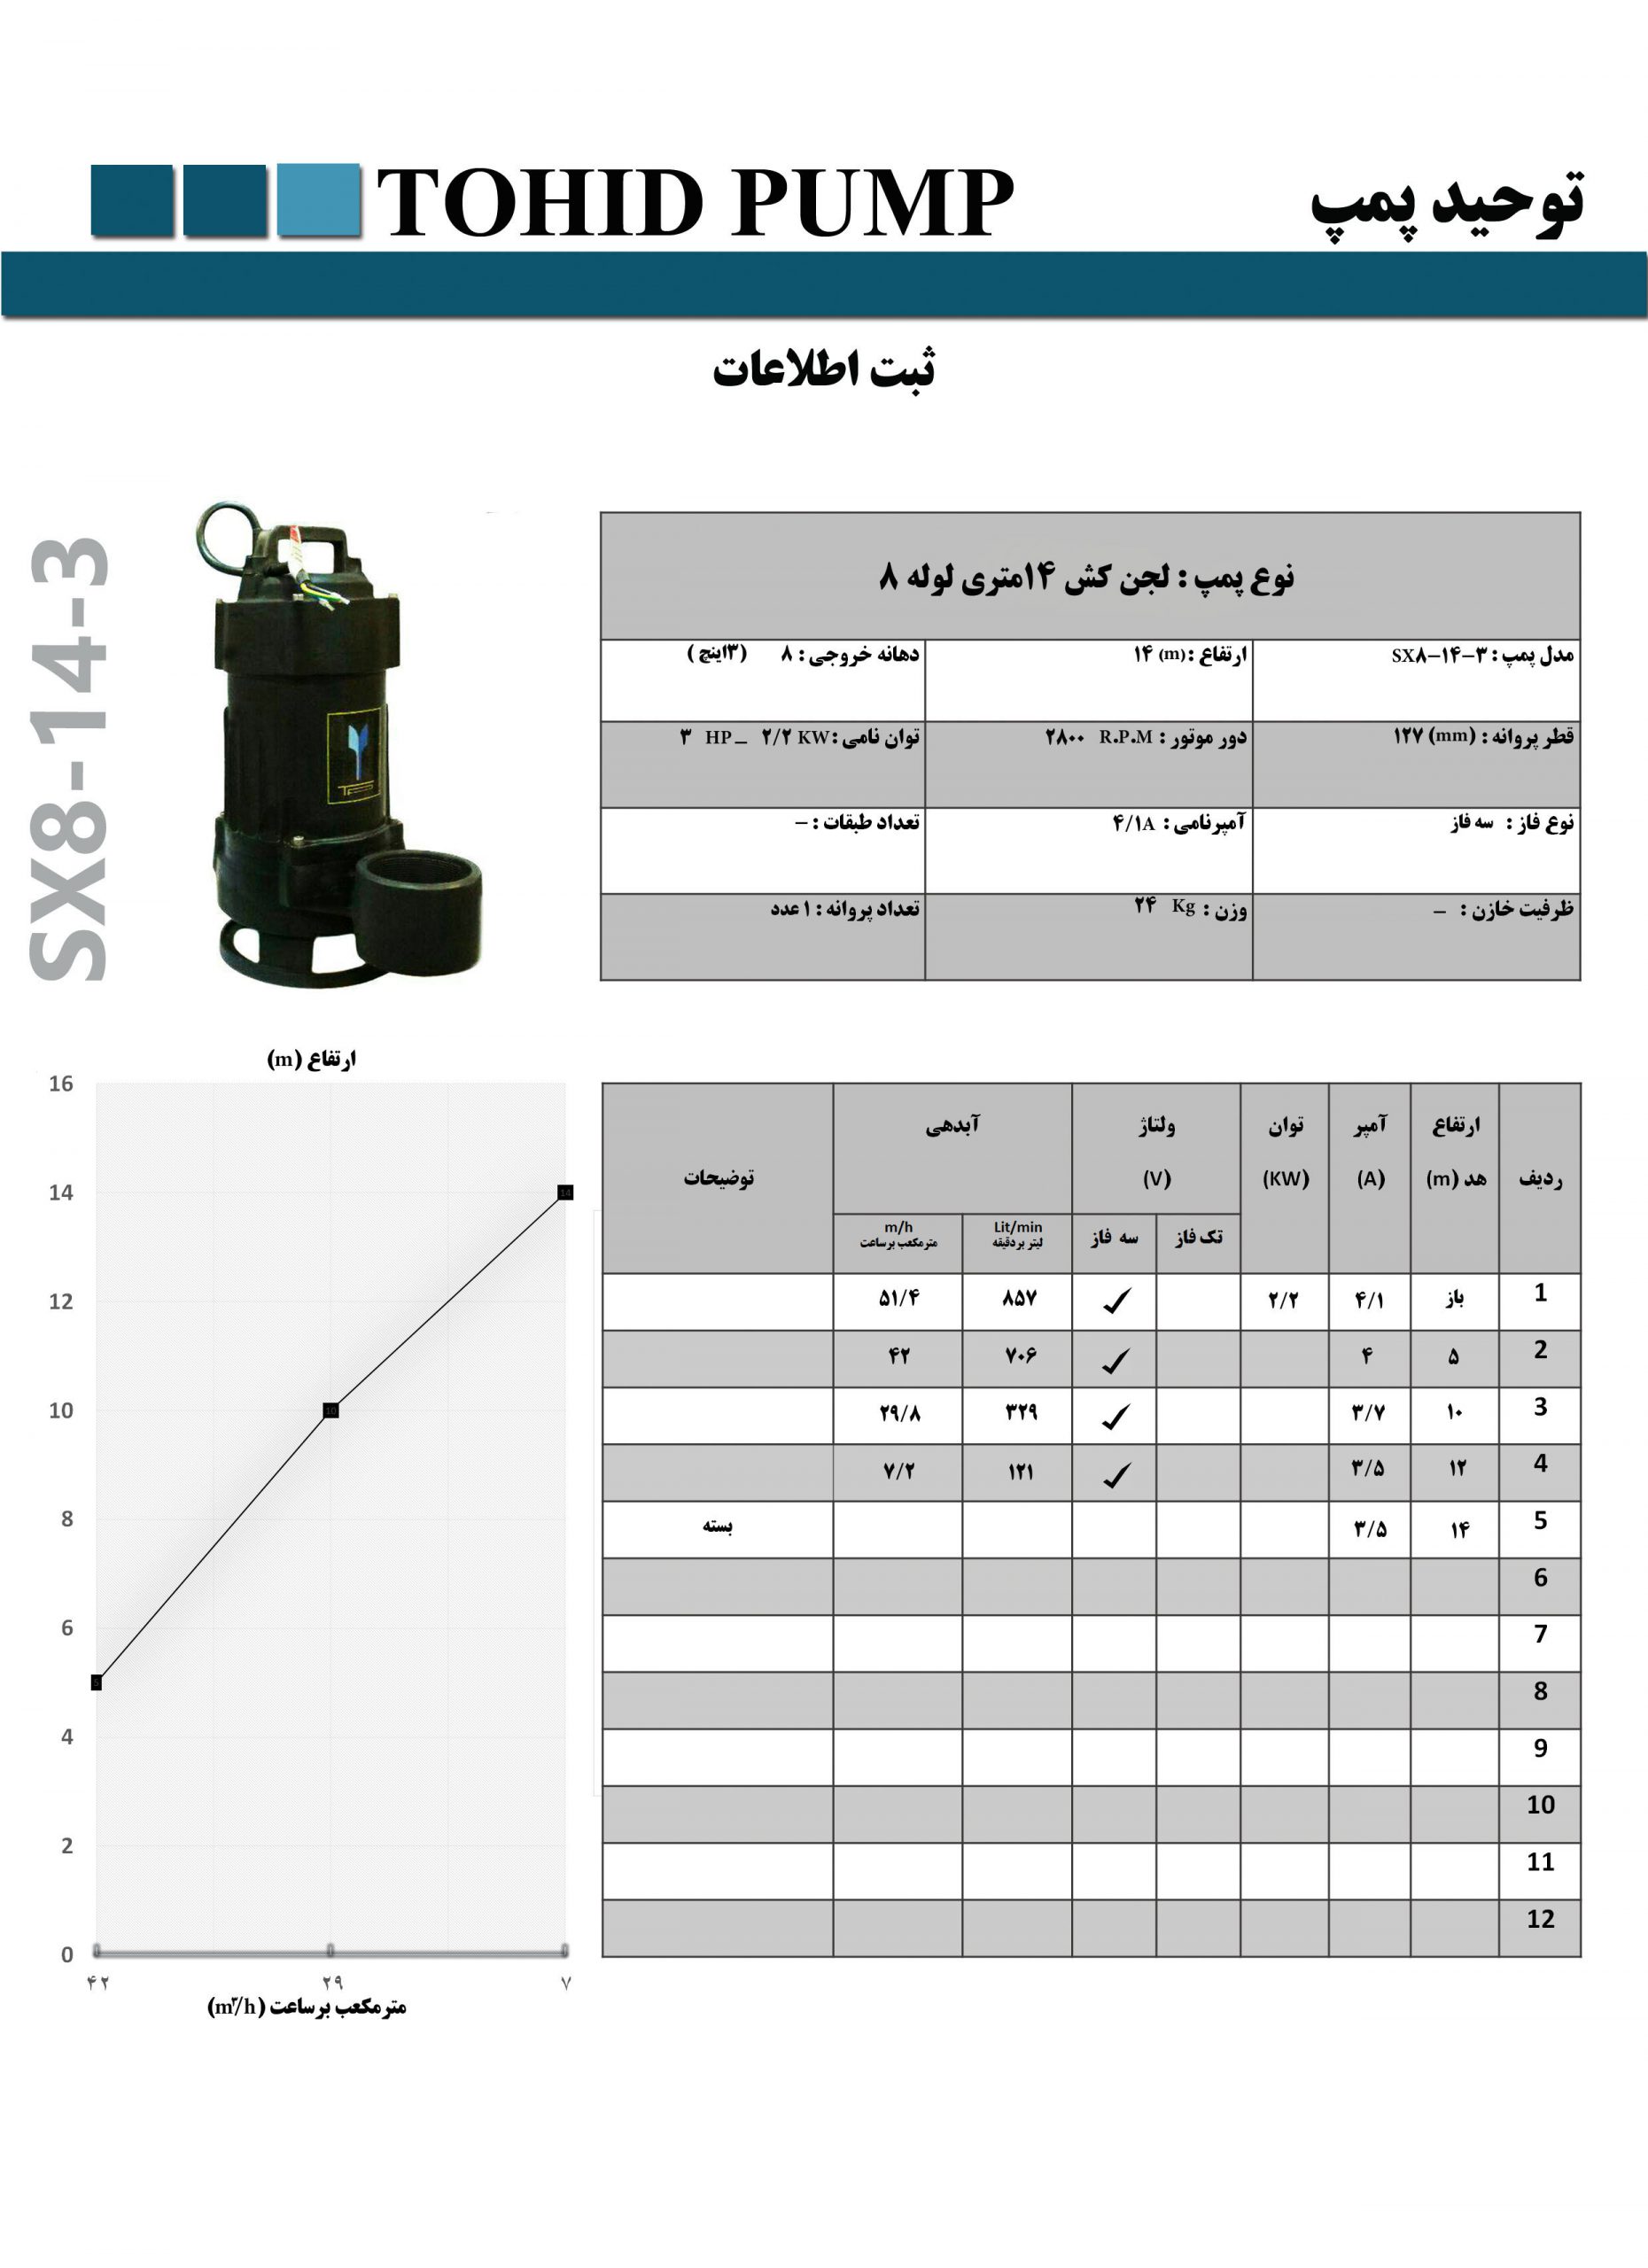 پمپ لجنکش ایرانی توحیدپمپ “3 اینچ،14 متری پمپ توحید